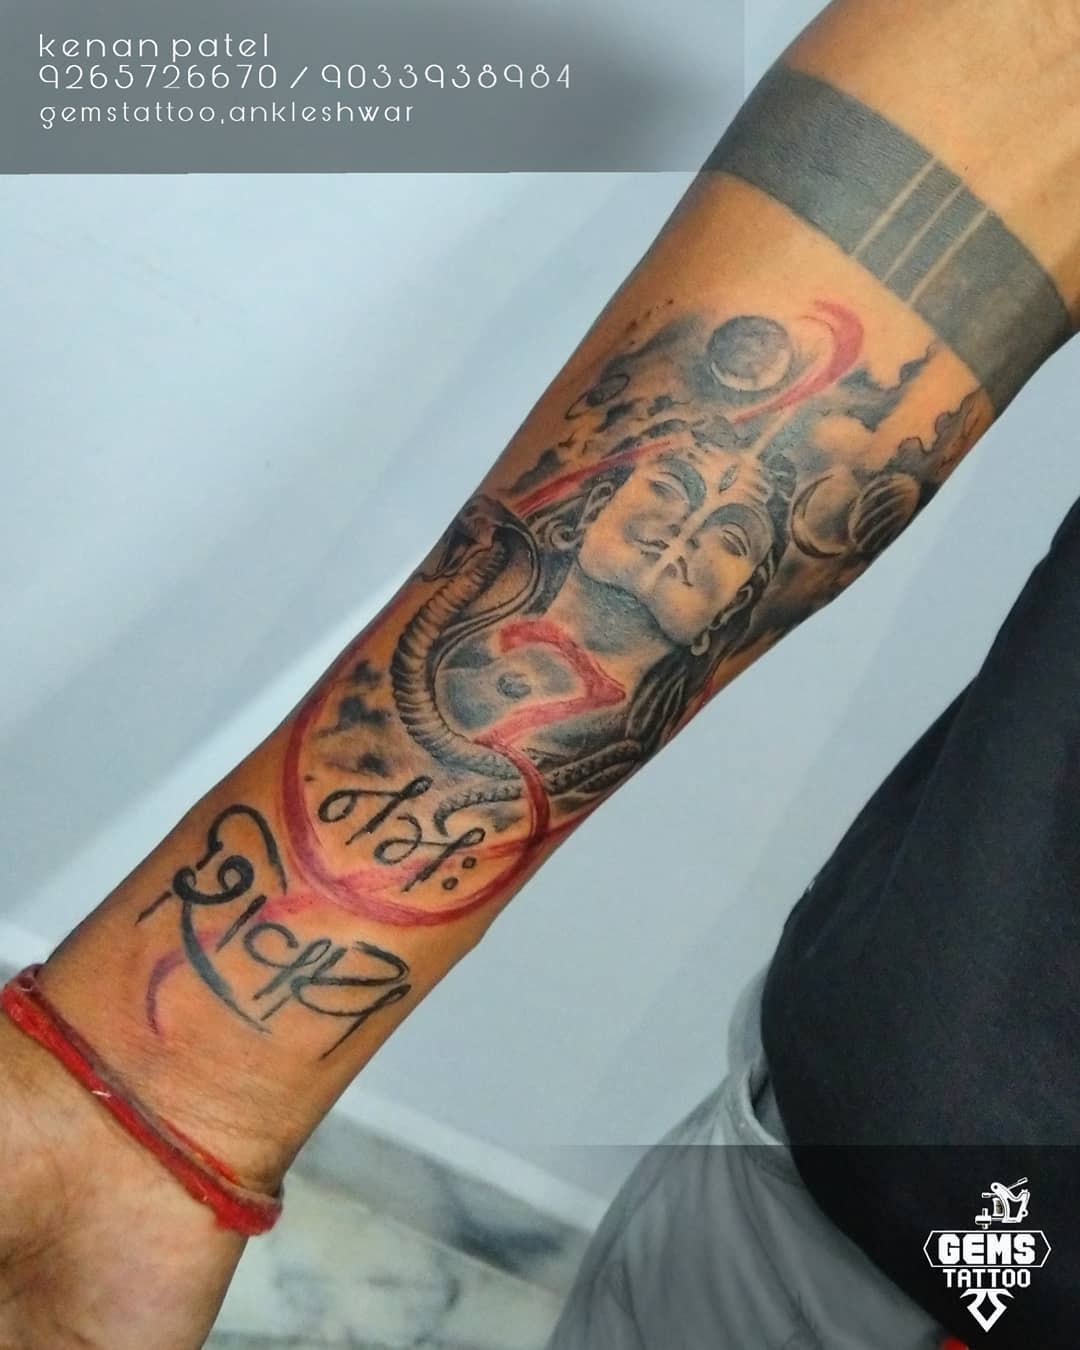 Rage of Lord shiva | Hindu tattoos, Tattoos, Arm tattoo